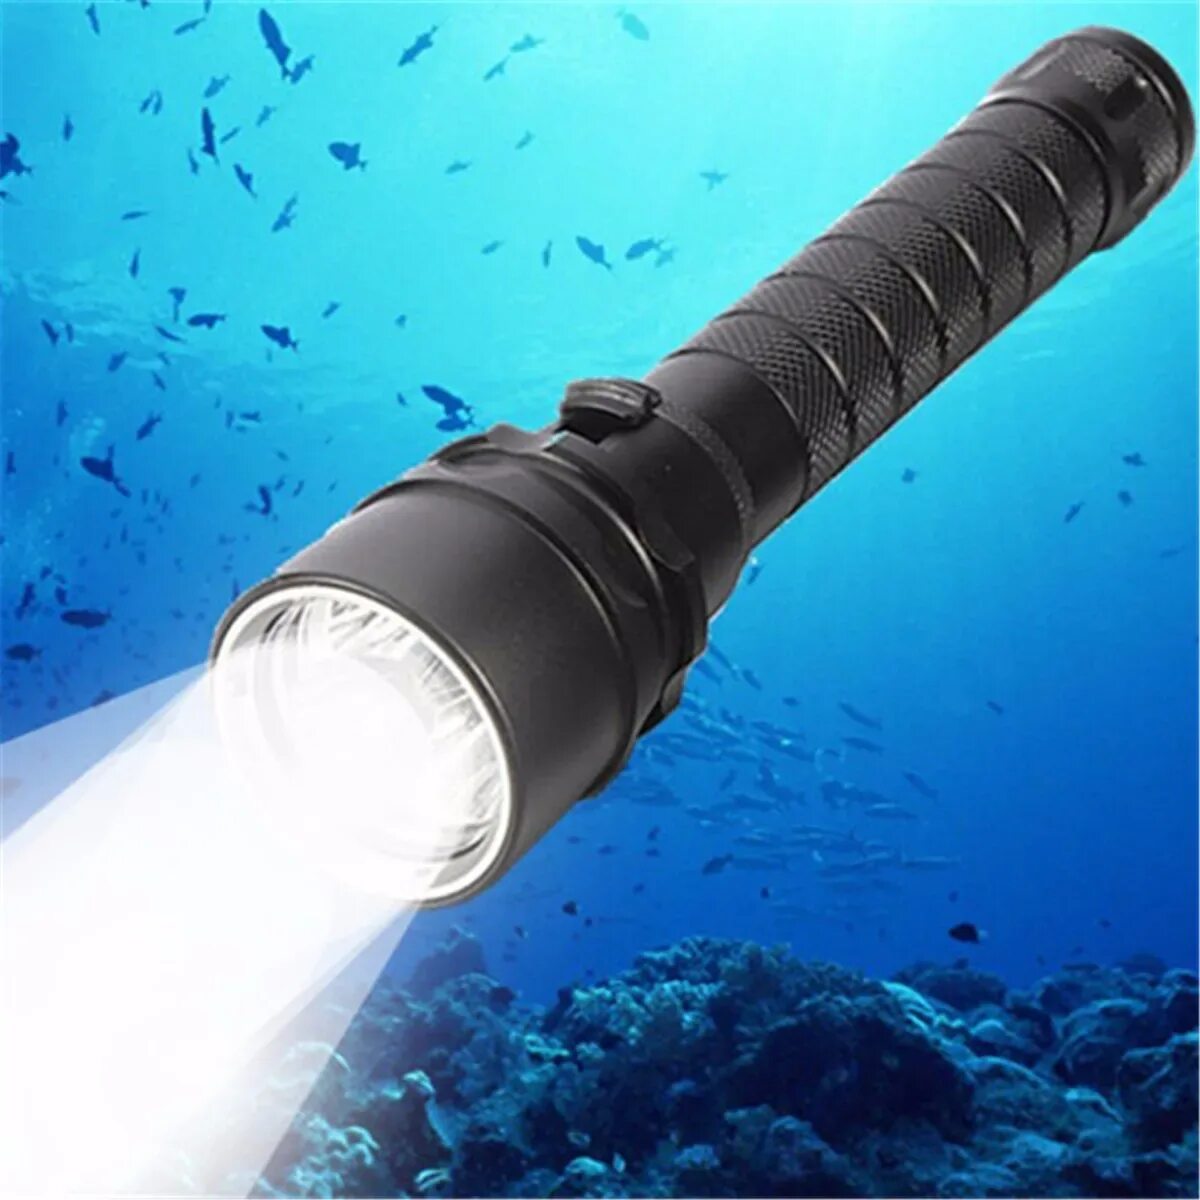 Мощный фонарь для рыбалки. Подводный фонарь d370. Подводный фонарь Waterproof model wp220. Подводный фонарь н-411-т6. Fh06 фонарь подводный ксенон.